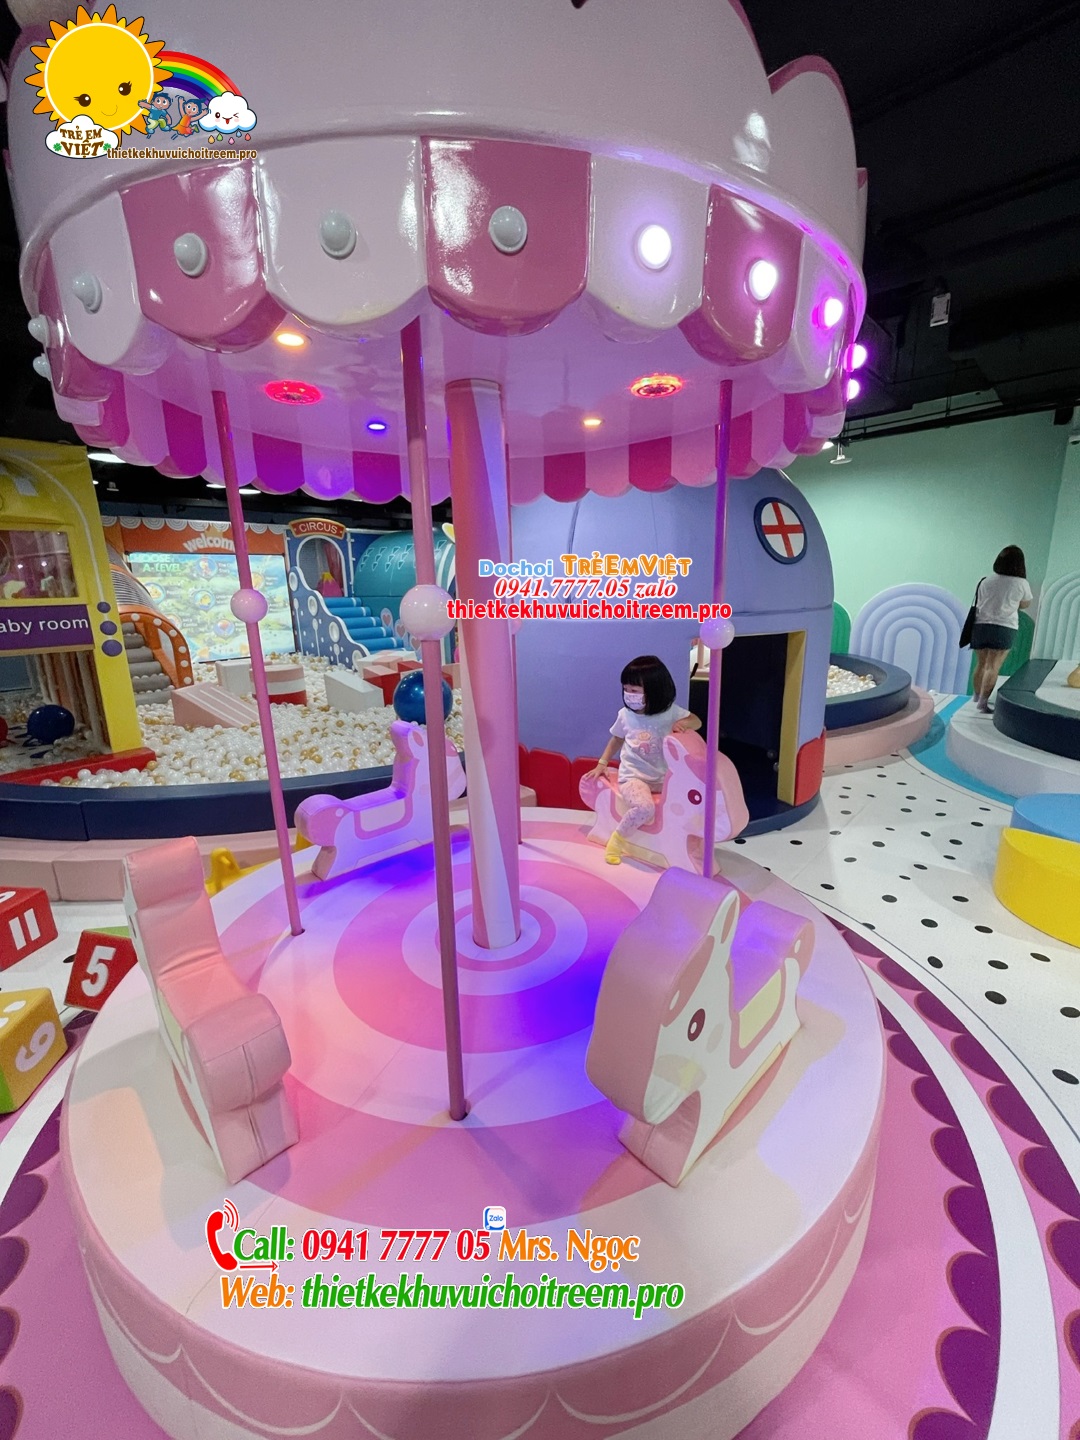 Thiết kế khu vui chơi giải trí cho trẻ em